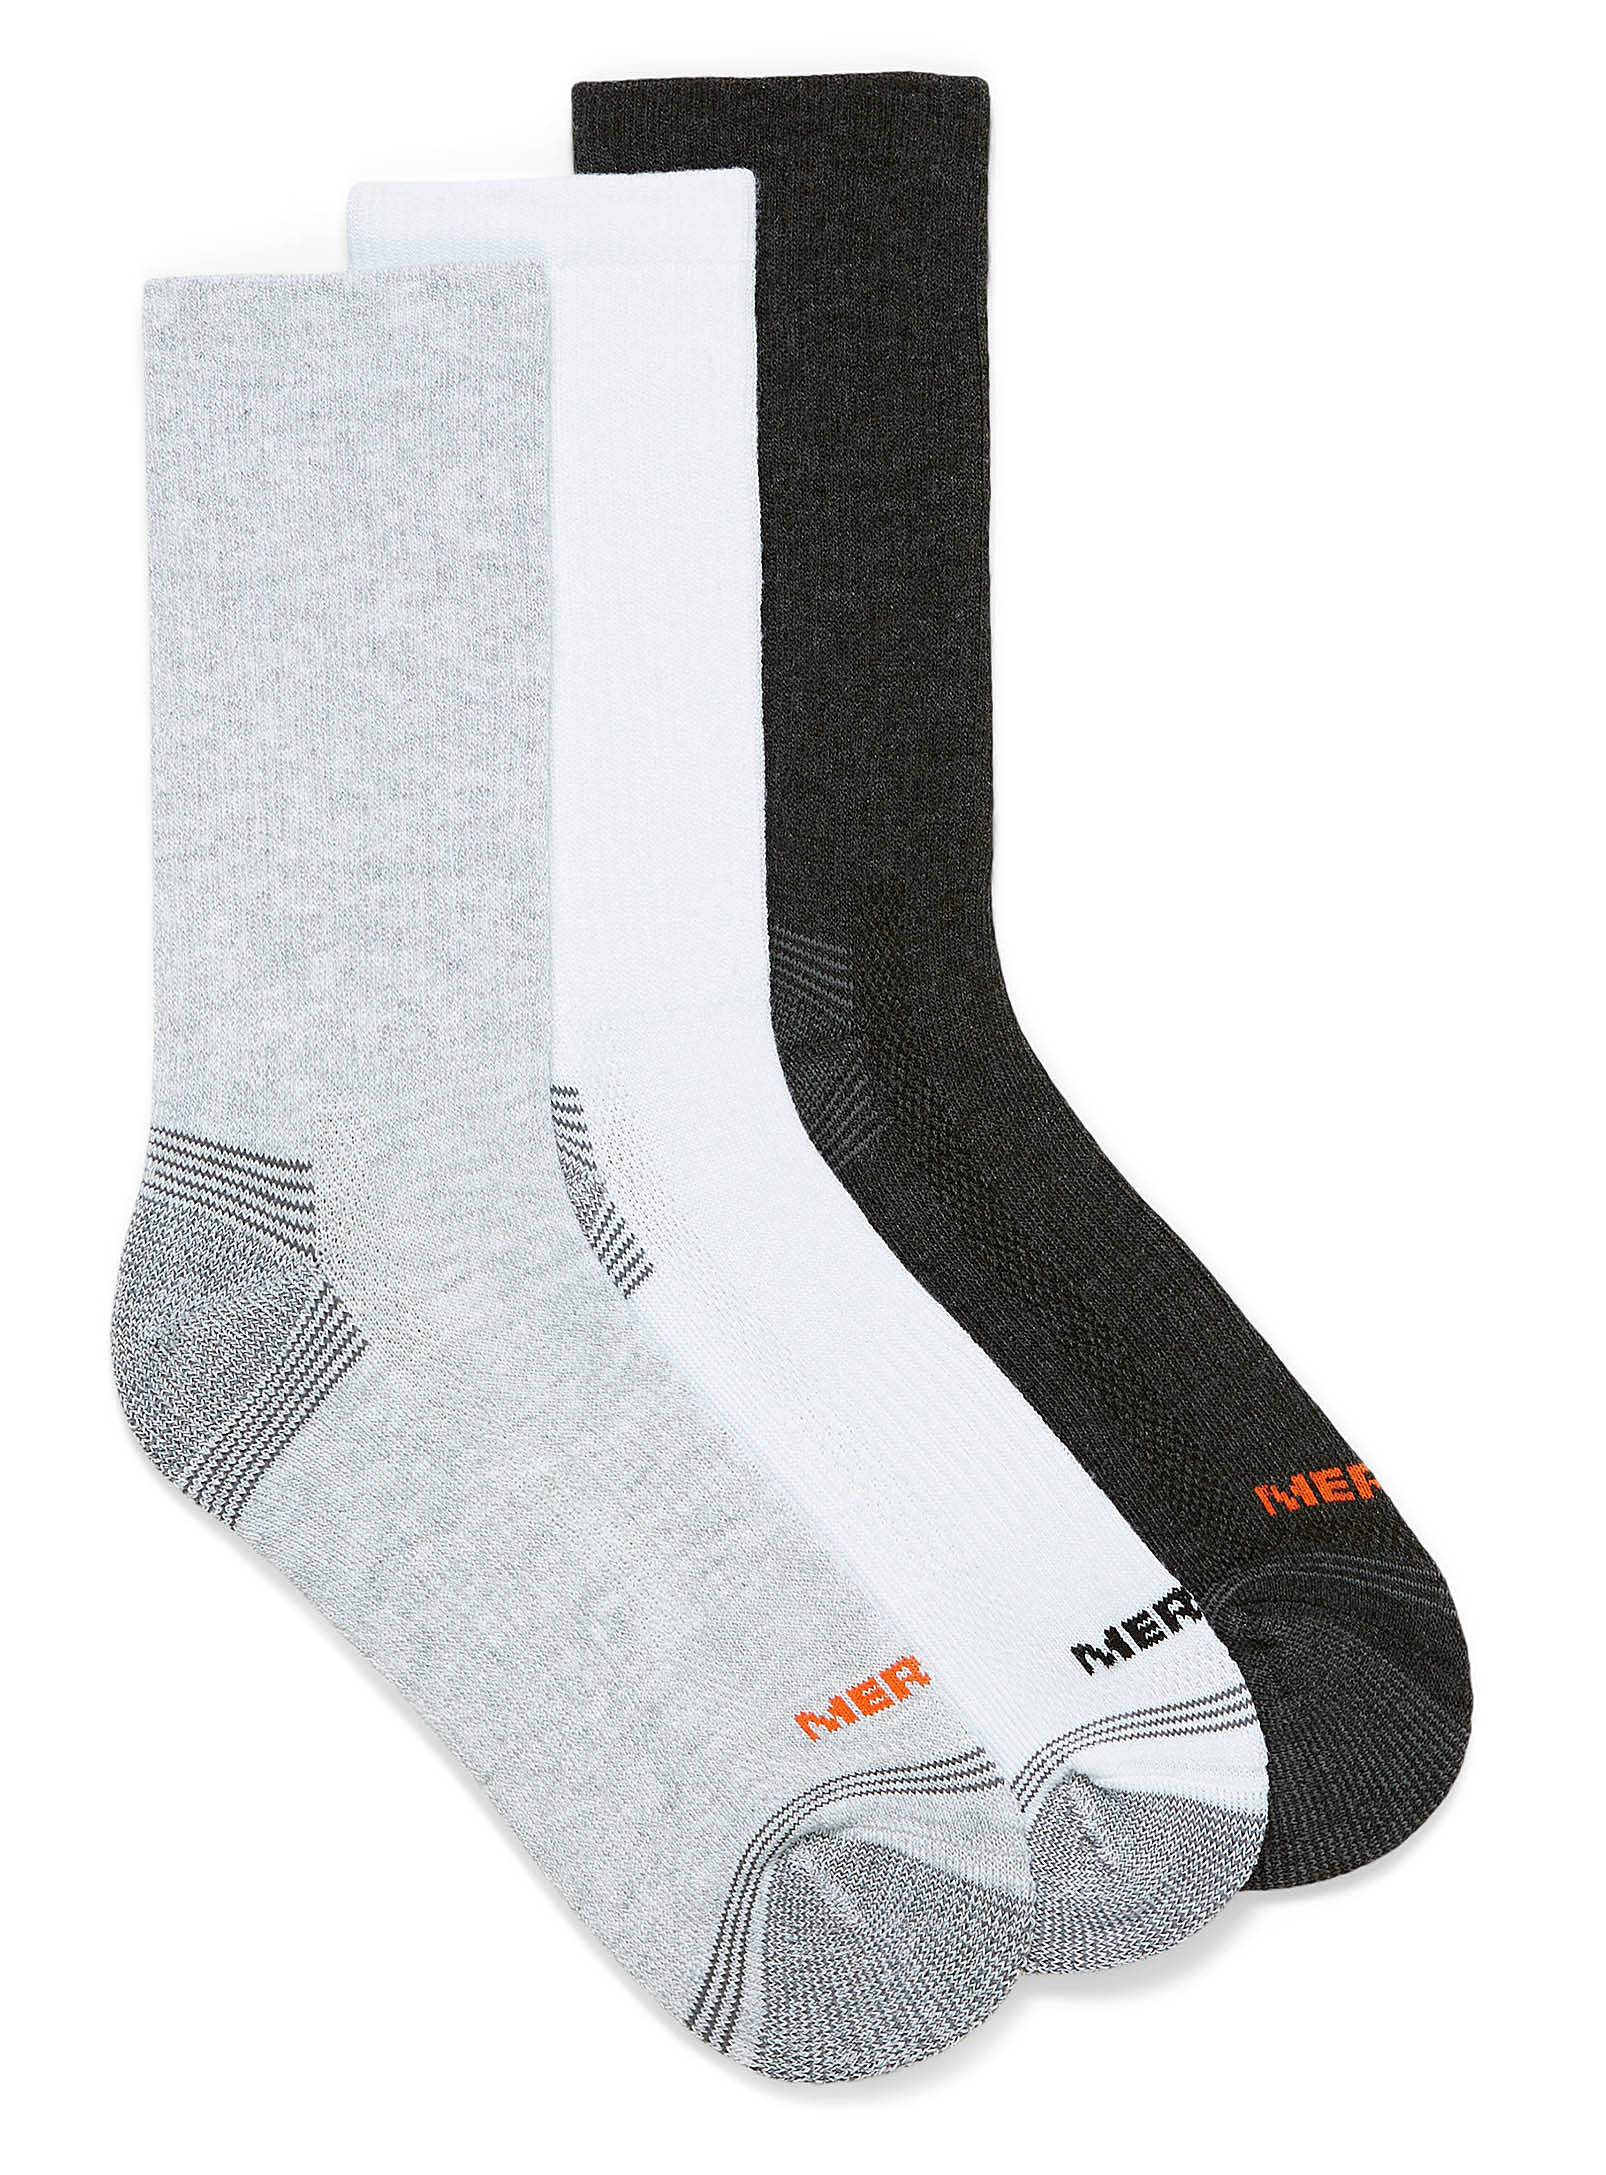 Merrell - Women's Padded socks Set of 3